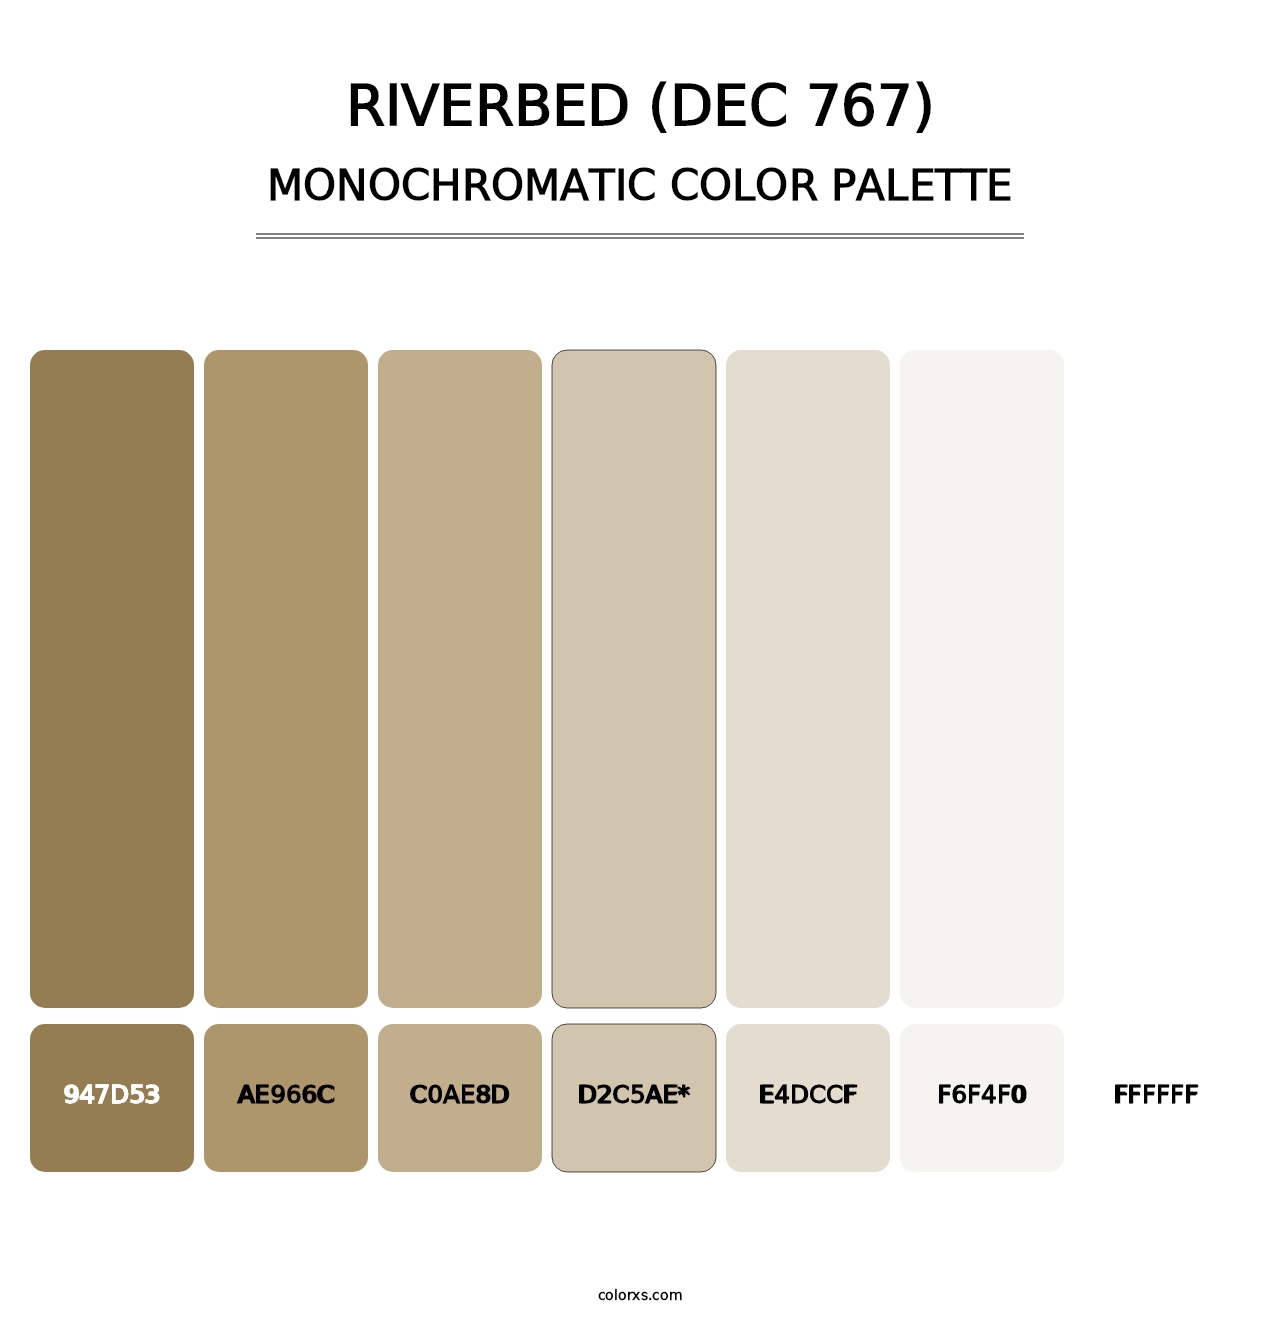 Riverbed (DEC 767) - Monochromatic Color Palette